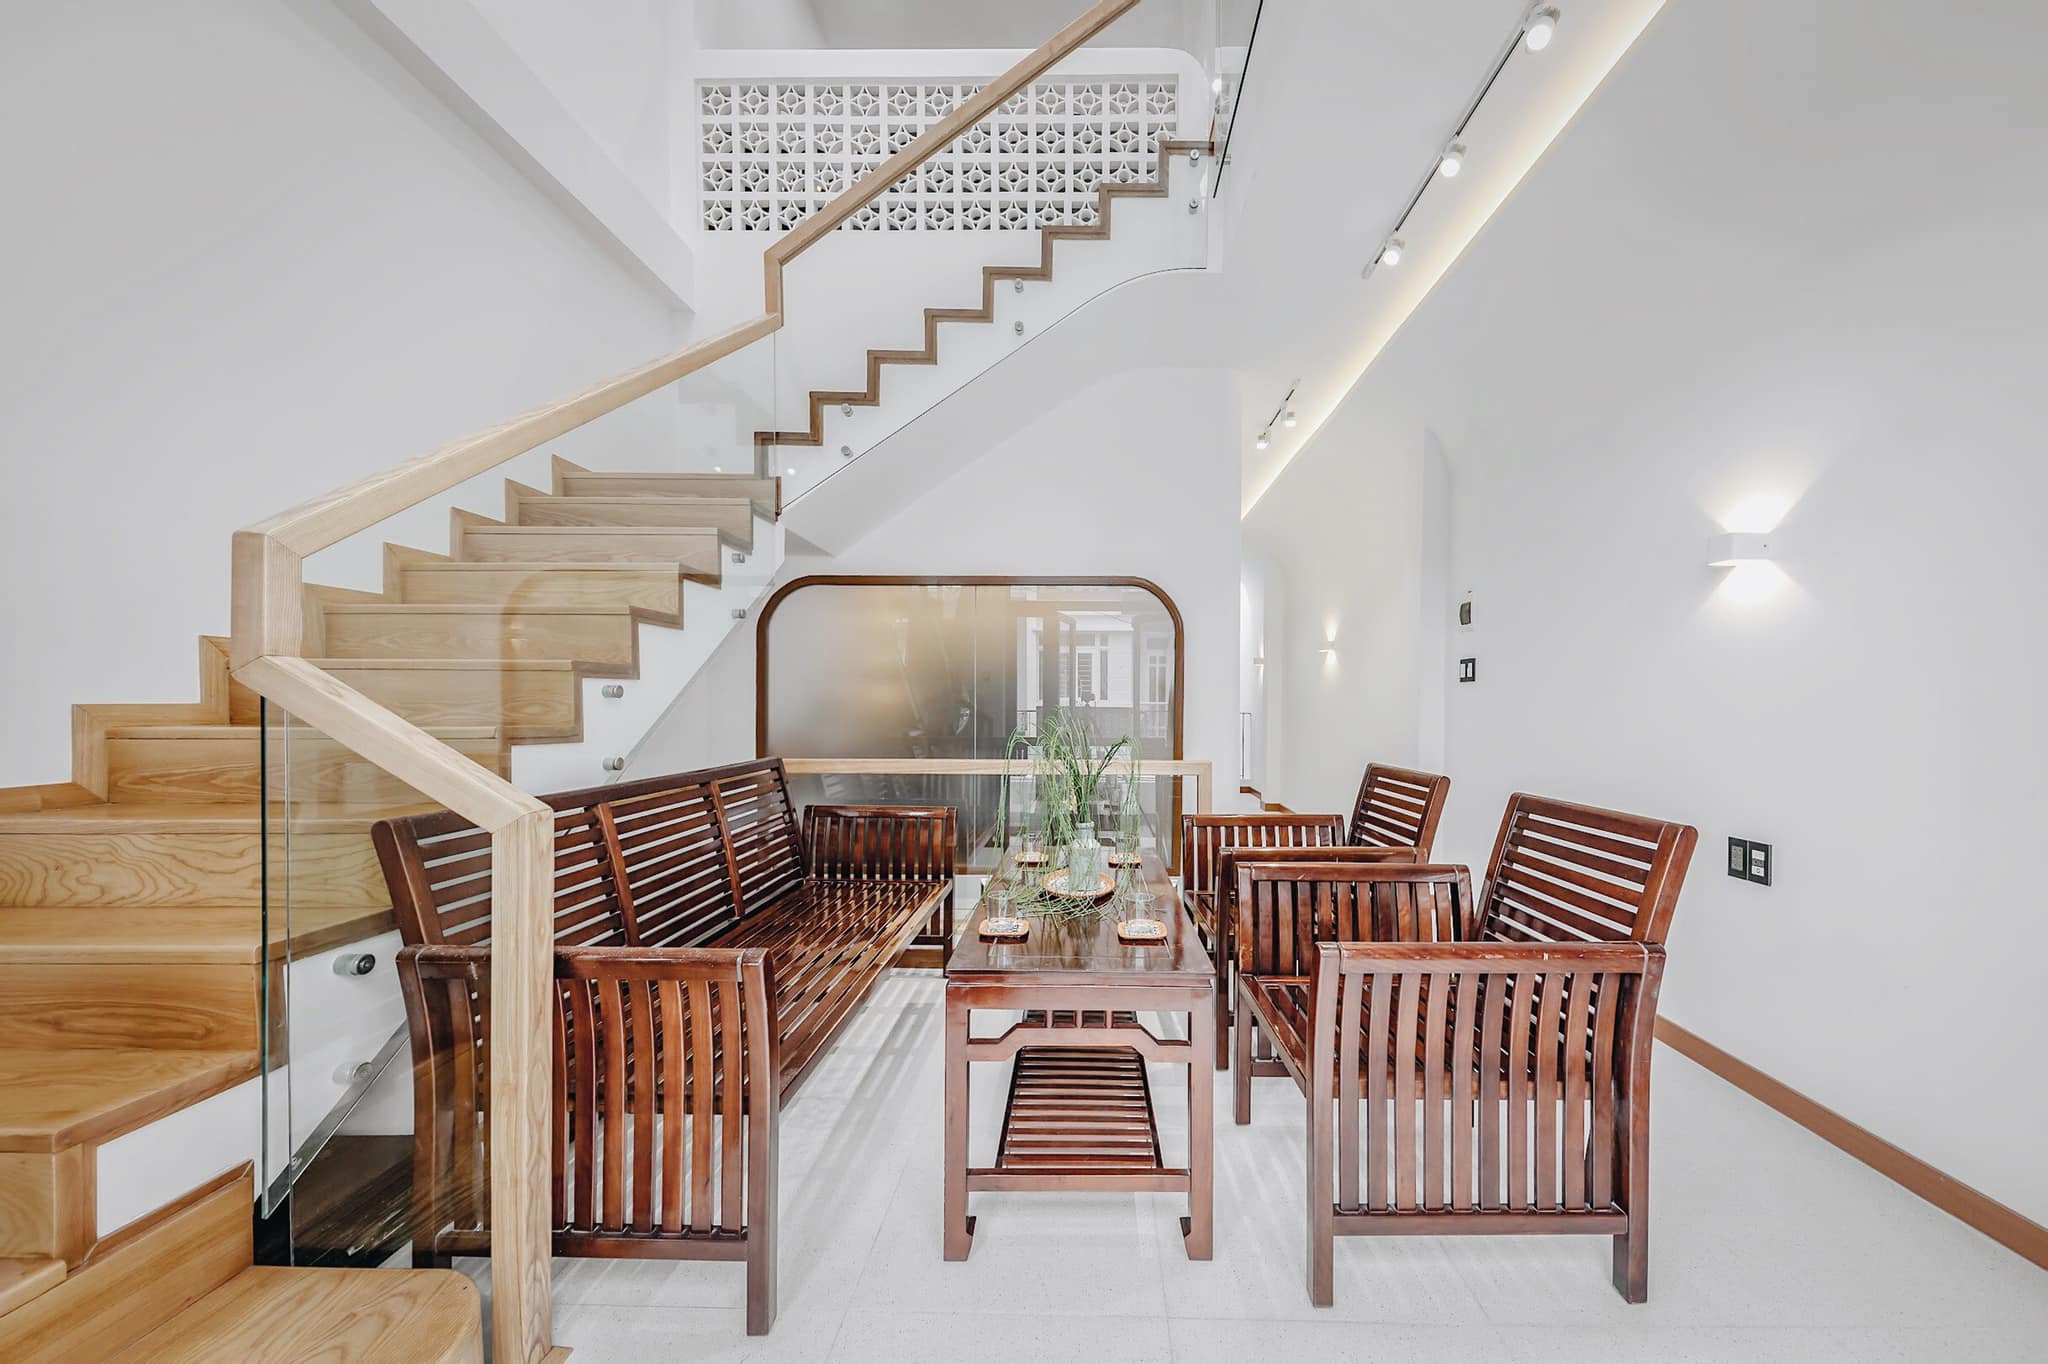 Mẫu bộ bàn ghế gỗ phòng khách 7 triệu với thiết kế mang phong cách hoài cổ đơn giản